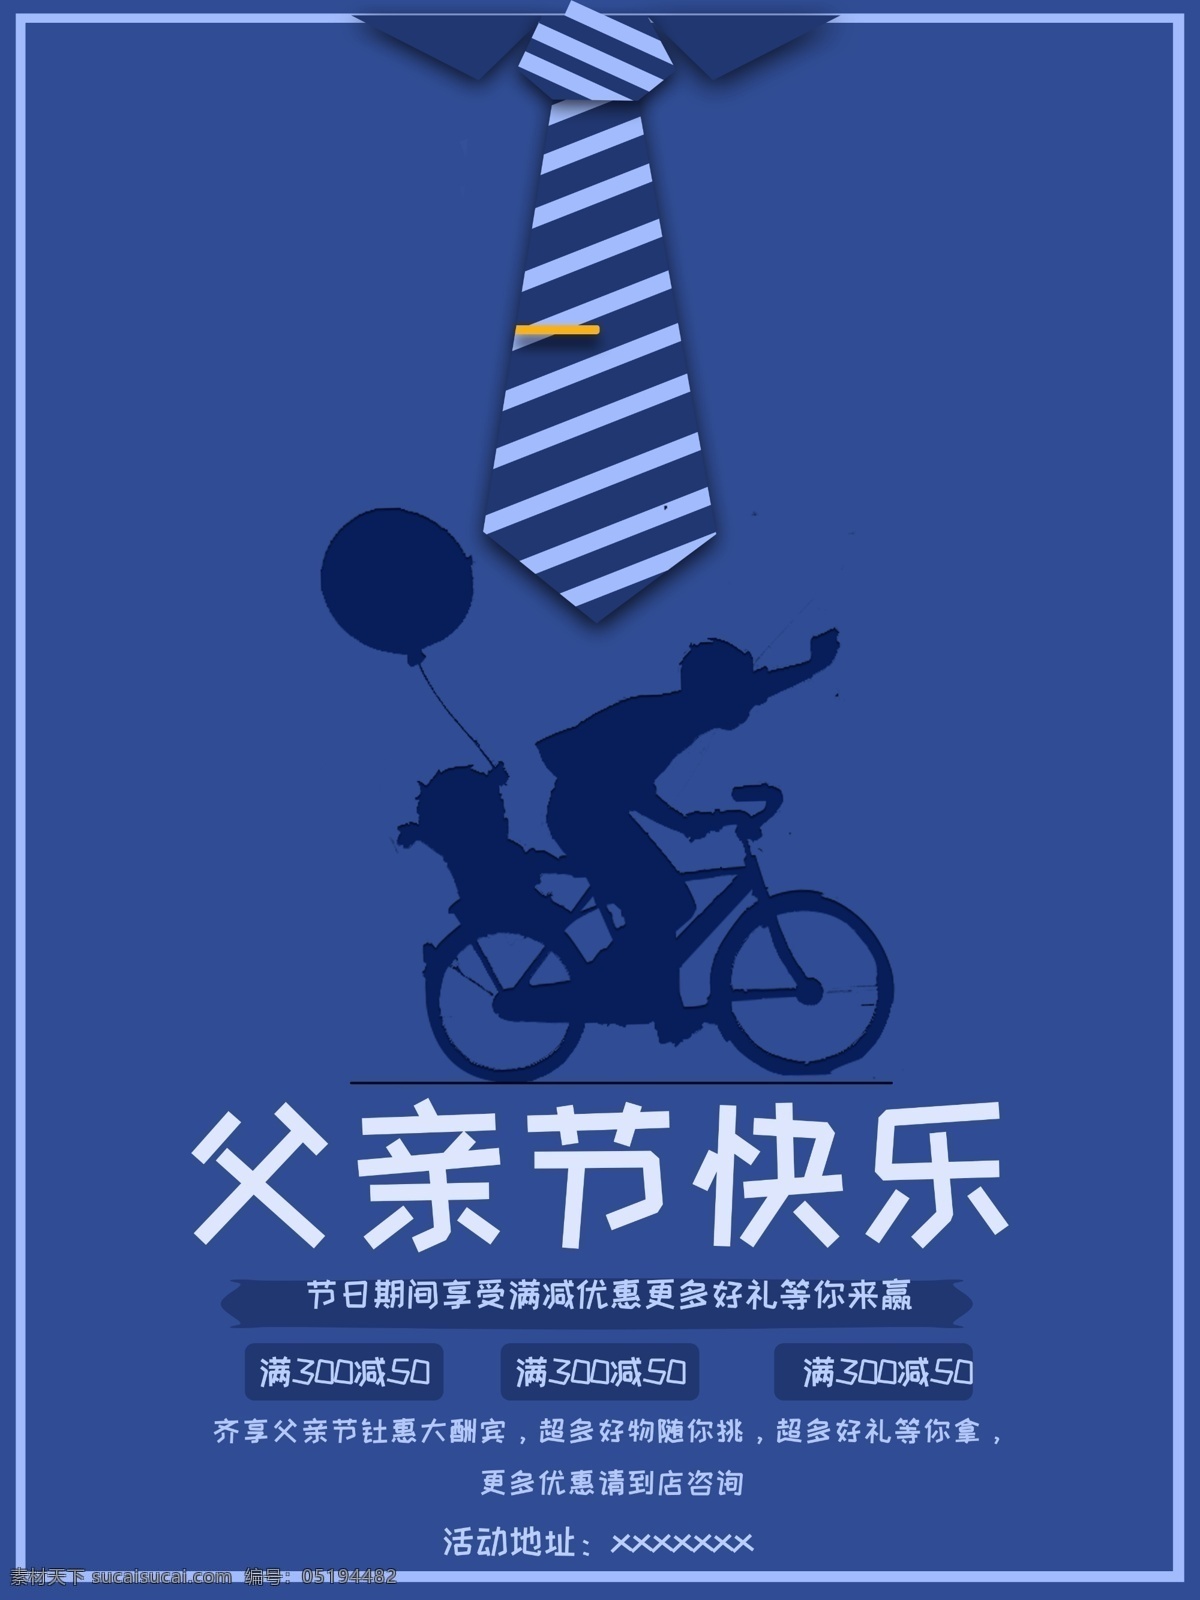 蓝色 创意 父亲节 快乐 节日 海报 促销 商场 创意海报 商业海报 折扣 领带 父亲节创意